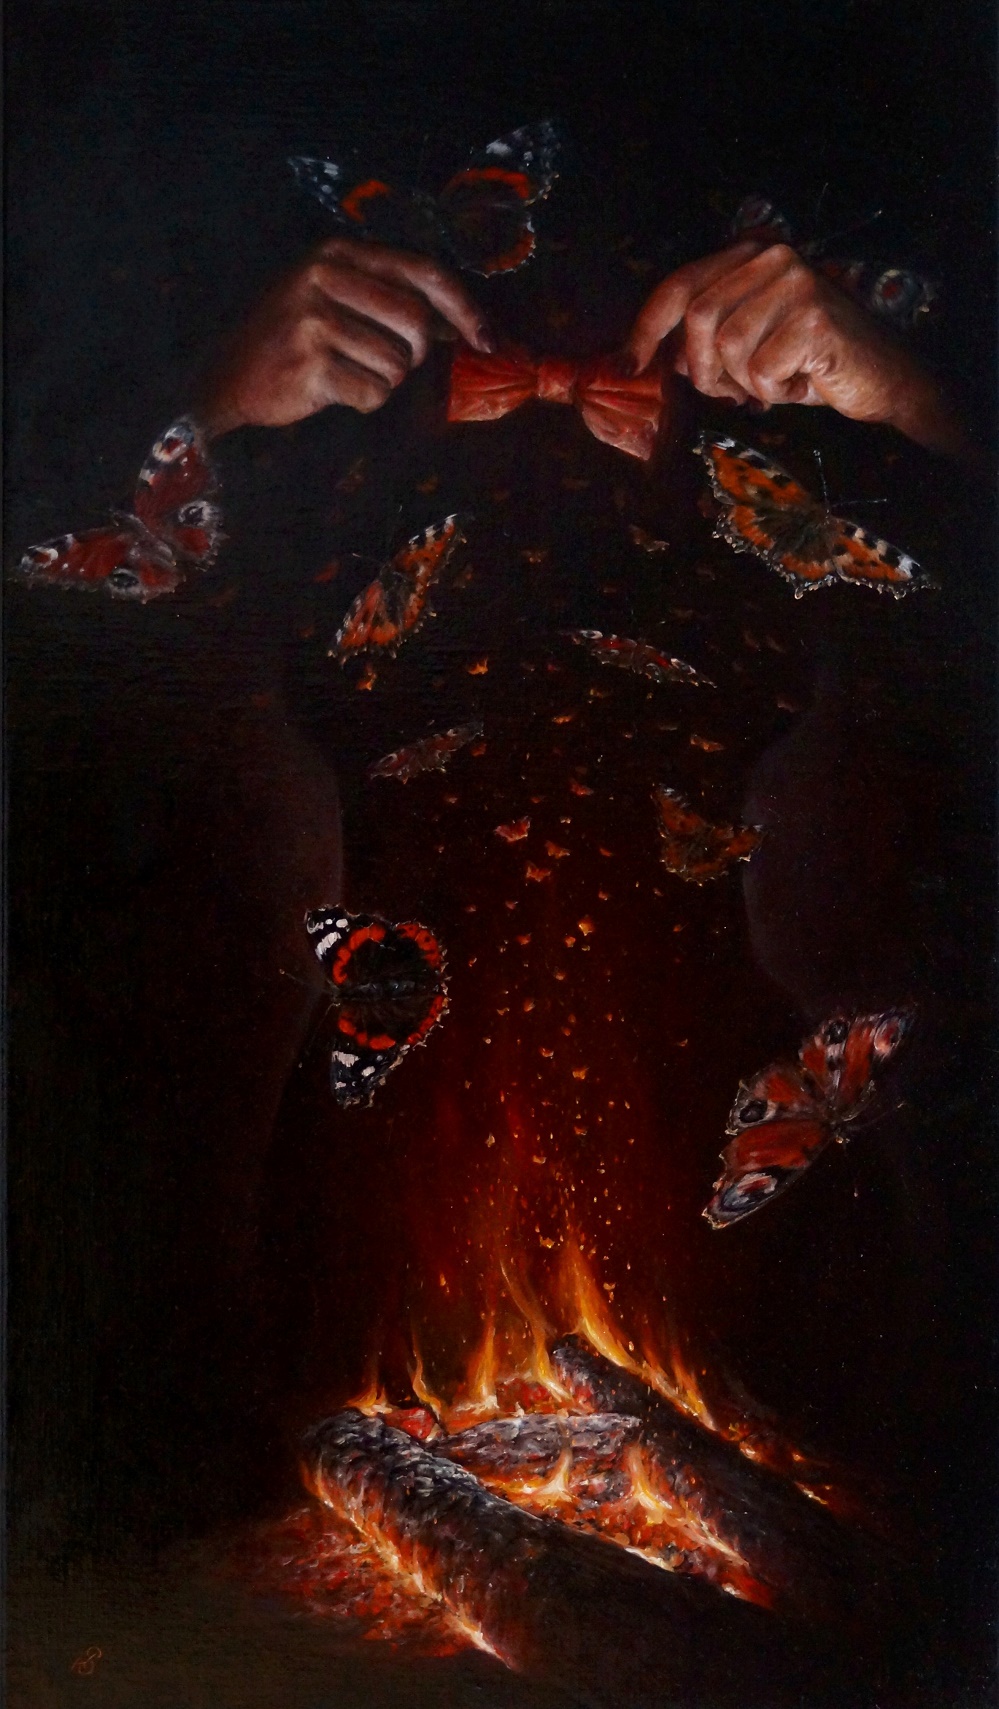 Картина "Бабочки", художник Сергей Колесников (KS), холст (лён, мелкое зерно), масло, 95x55 см, 2021 год. Живопись, авторский стиль - интегральный реализм.